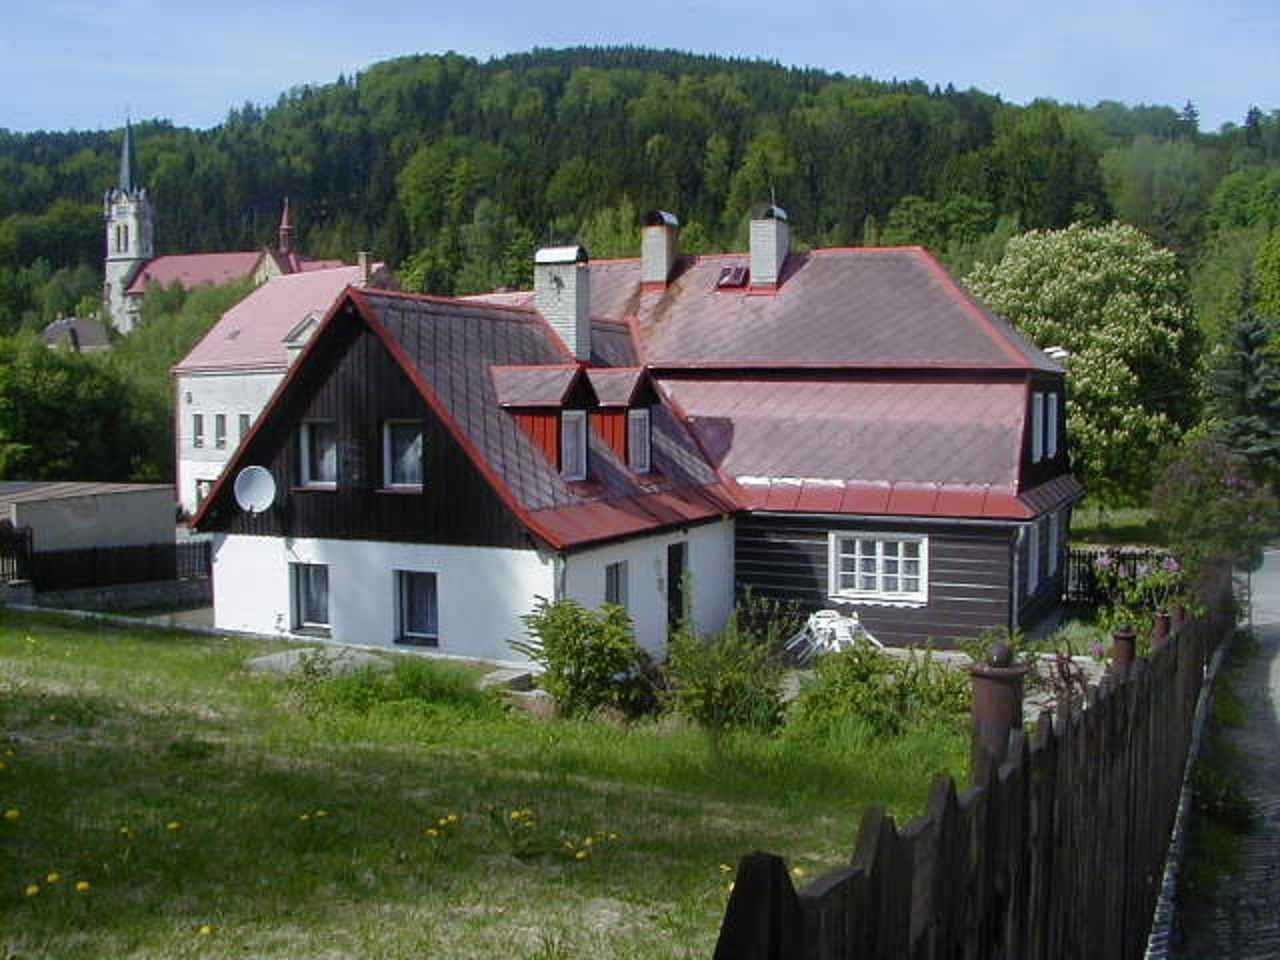 Ferienhaus mit Kaminofen in Hanglage Ferienhaus  Nordböhmen